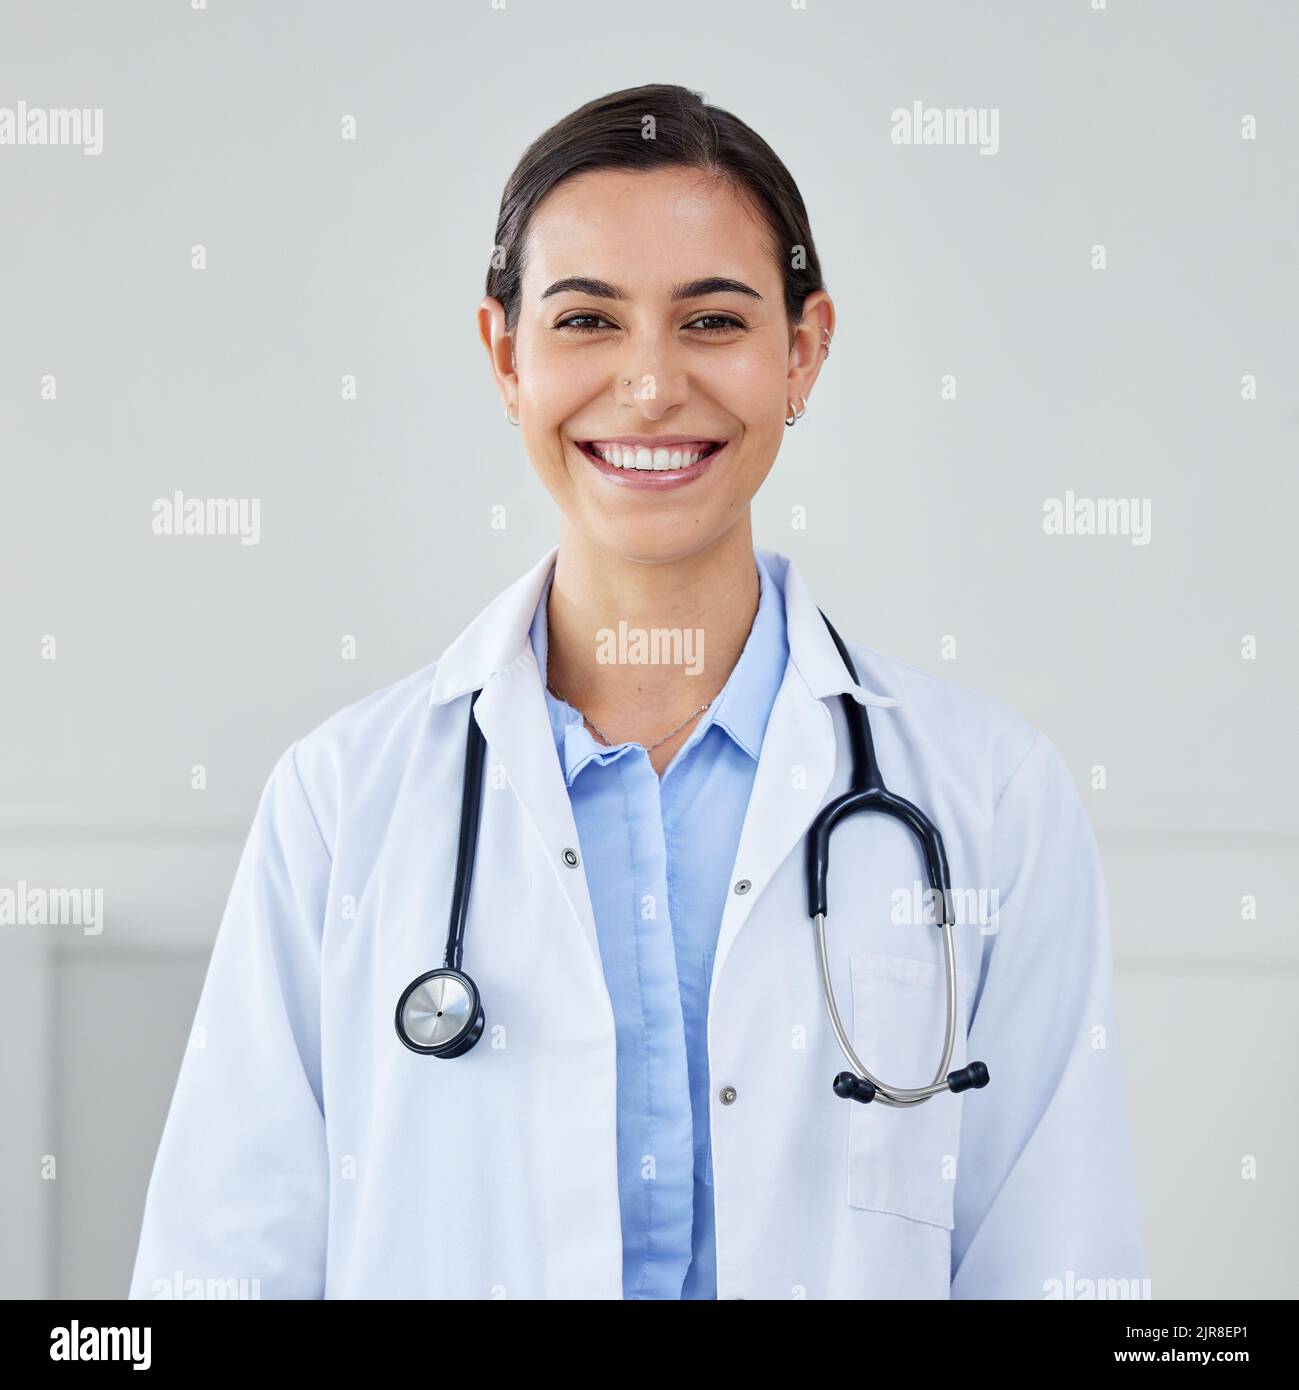 Sorridere medico, chirurgo e terapista medico che lavora in ospedale o clinica per l'assicurazione medica, il benessere e la medicina. Ritratto di donna felice Foto Stock